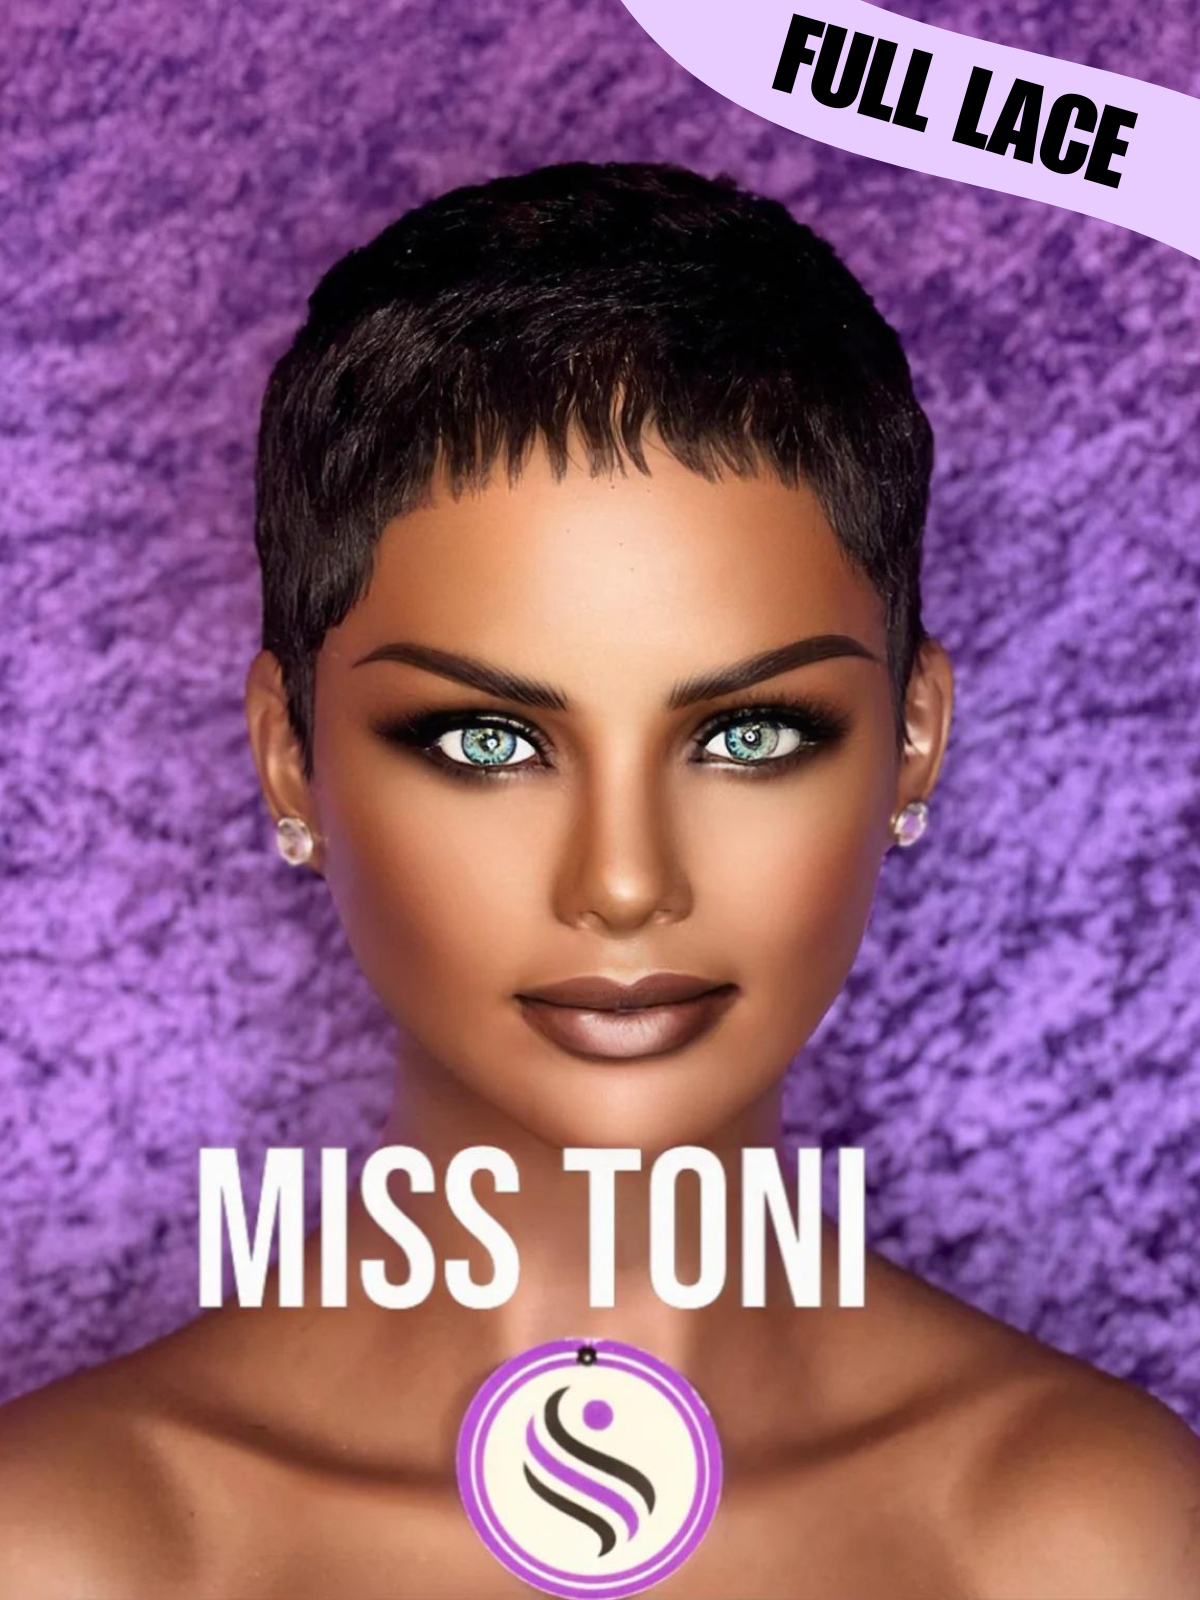 Miss Toni - Full Lace